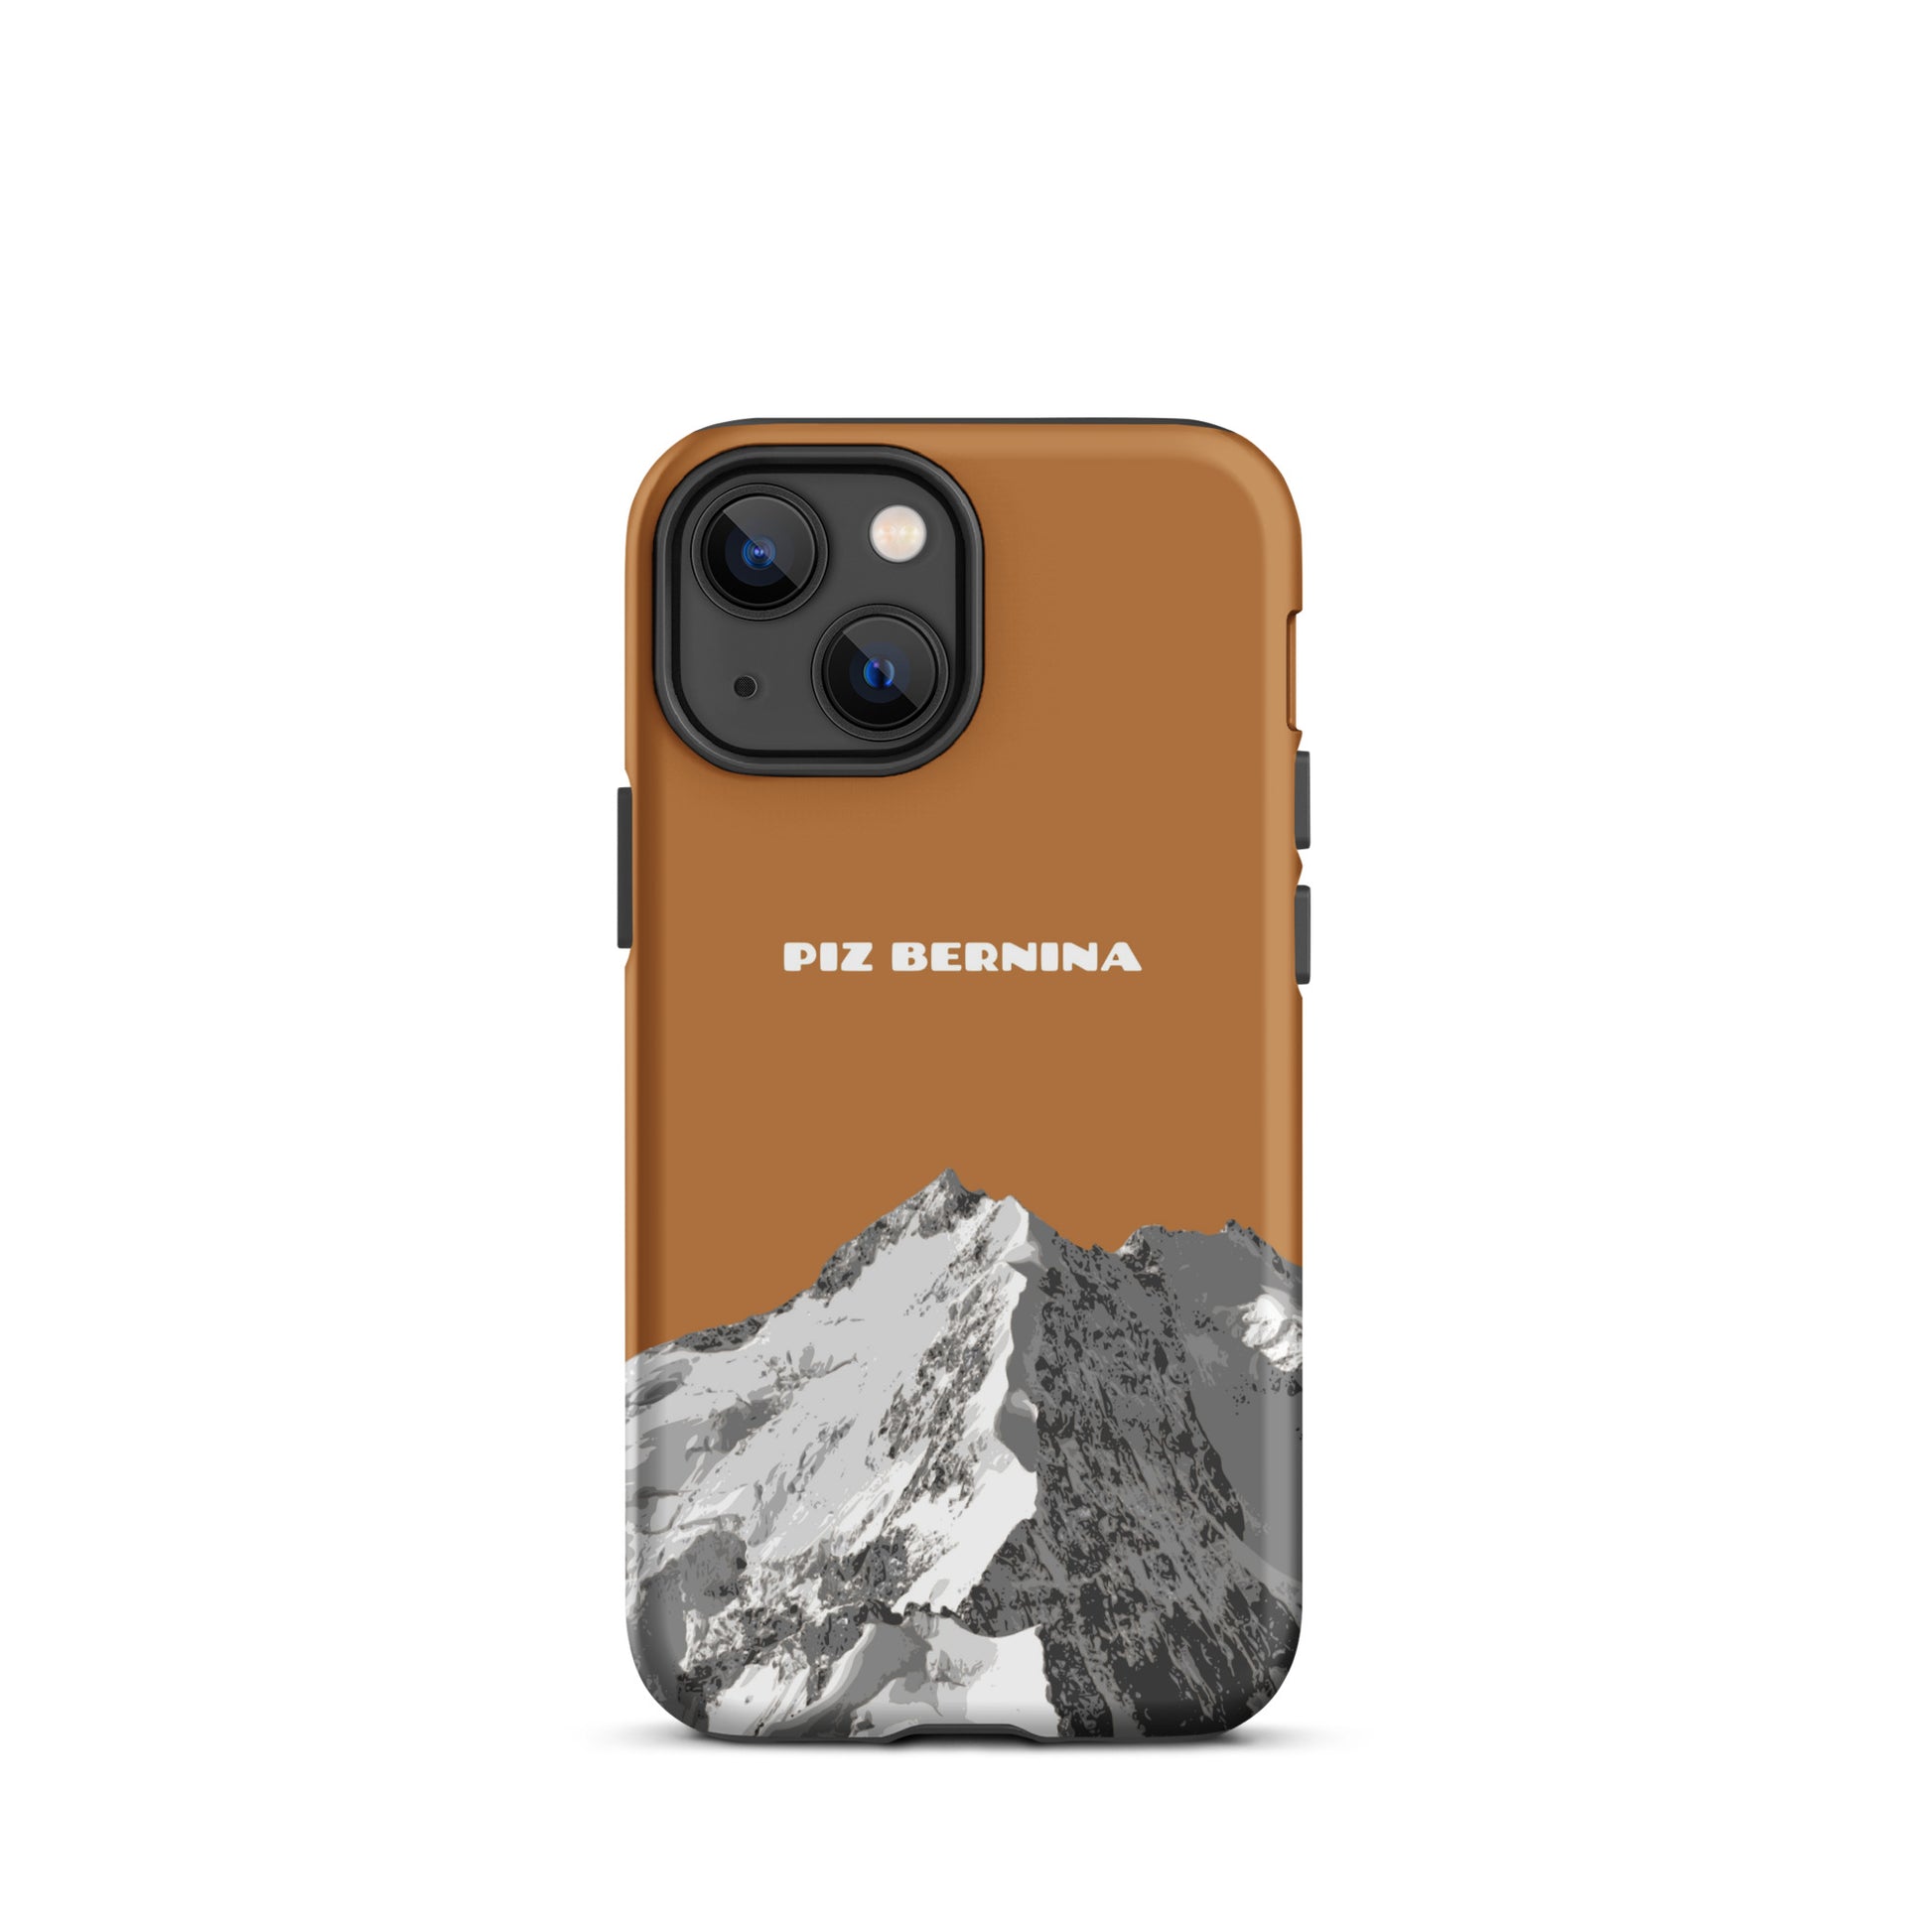 Hülle für das iPhone 13 Mini von Apple in der Farbe Kupfer, dass den Piz Bernina in Graubünden zeigt.